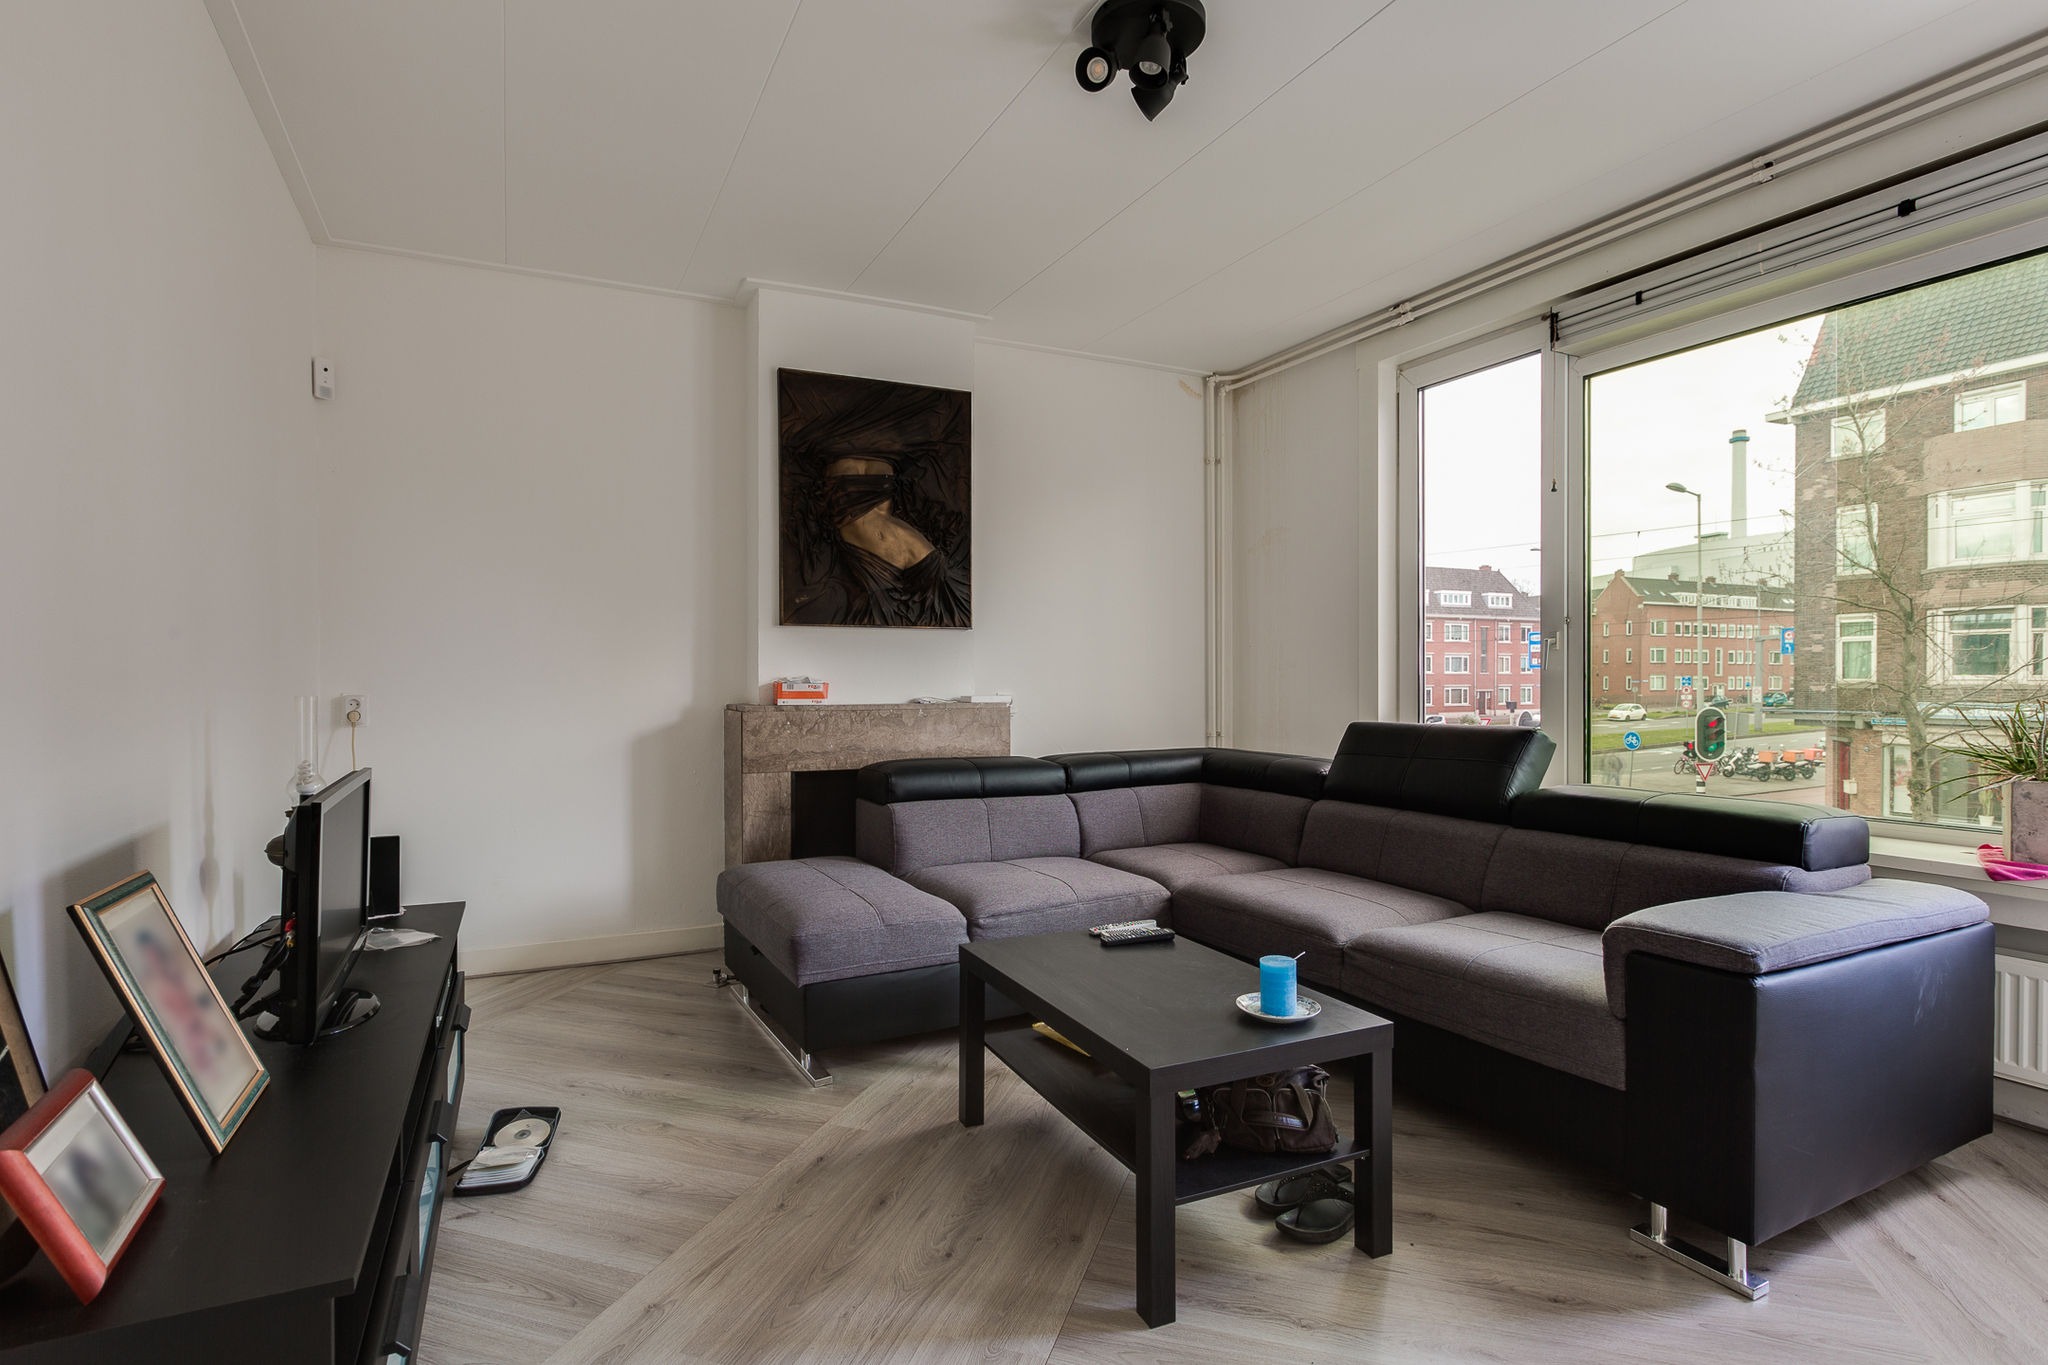 Woning / appartement - Rotterdam - Wolphaertsbocht 193 A, 193B, 193C